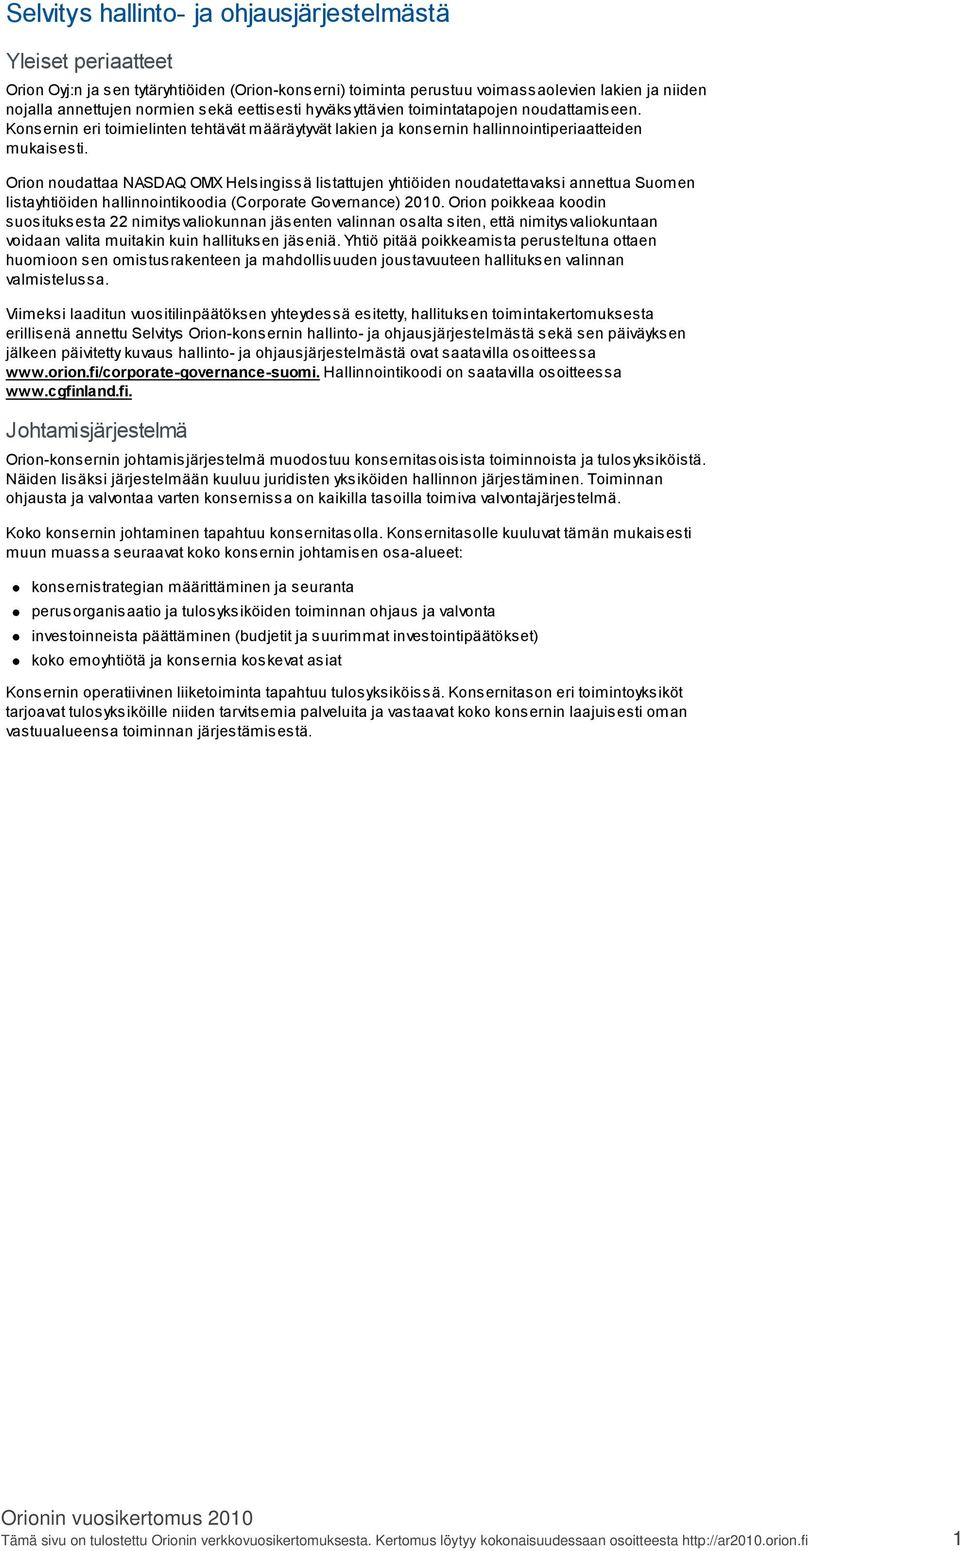 Orion noudattaa NASDAQ OMX Helsingissä listattujen yhtiöiden noudatettavaksi annettua Suomen listayhtiöiden hallinnointikoodia (Corporate Governance) 2010.